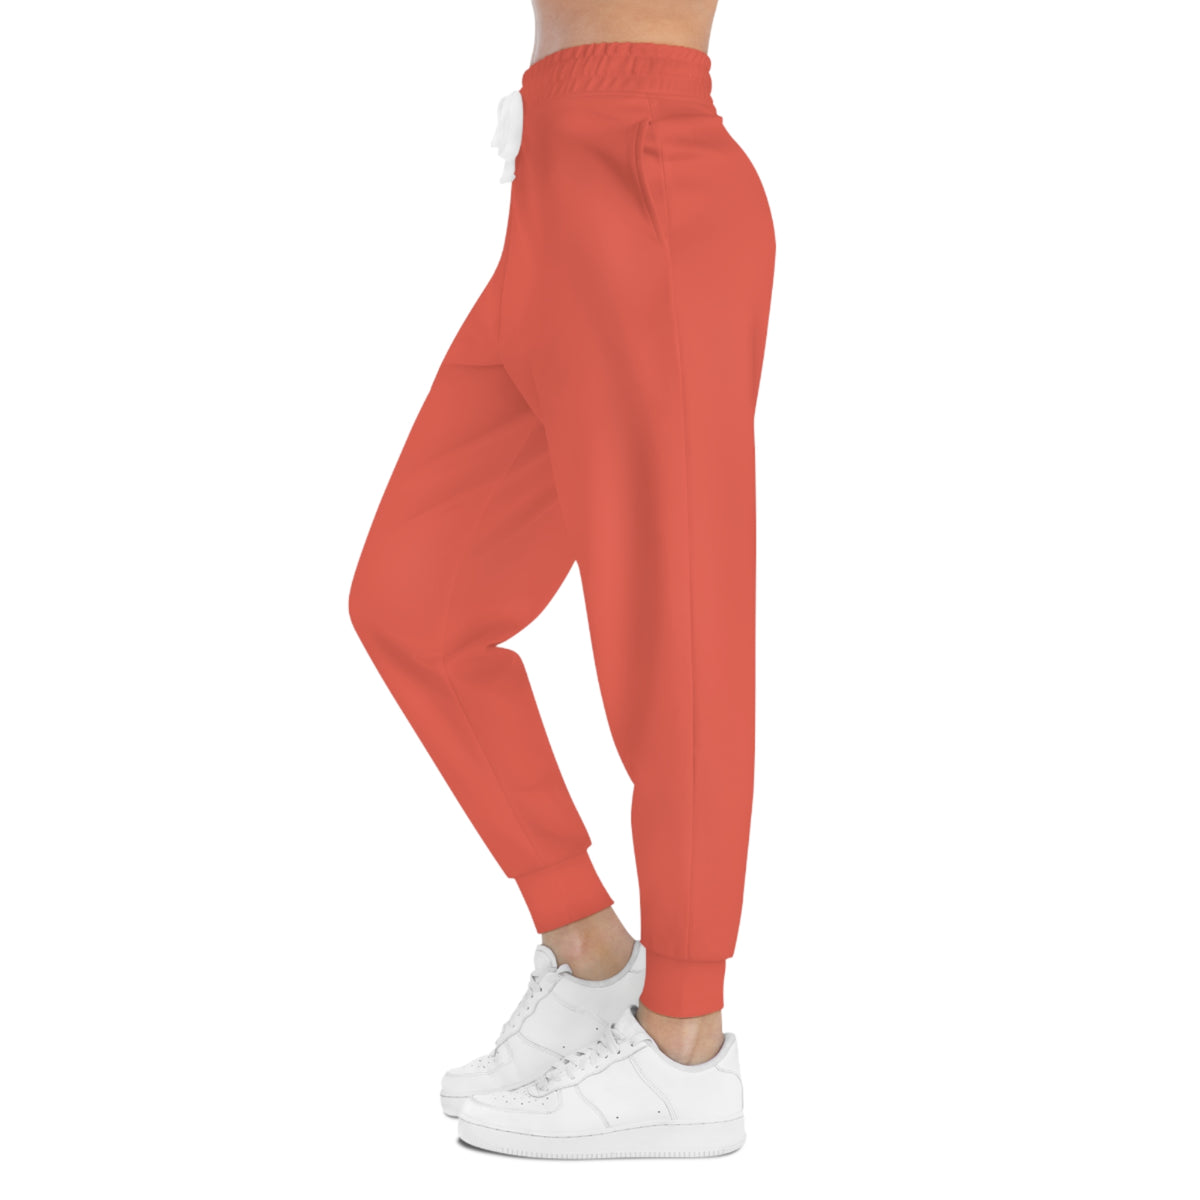 Unisex Athletic Joggers Pants (Orange)